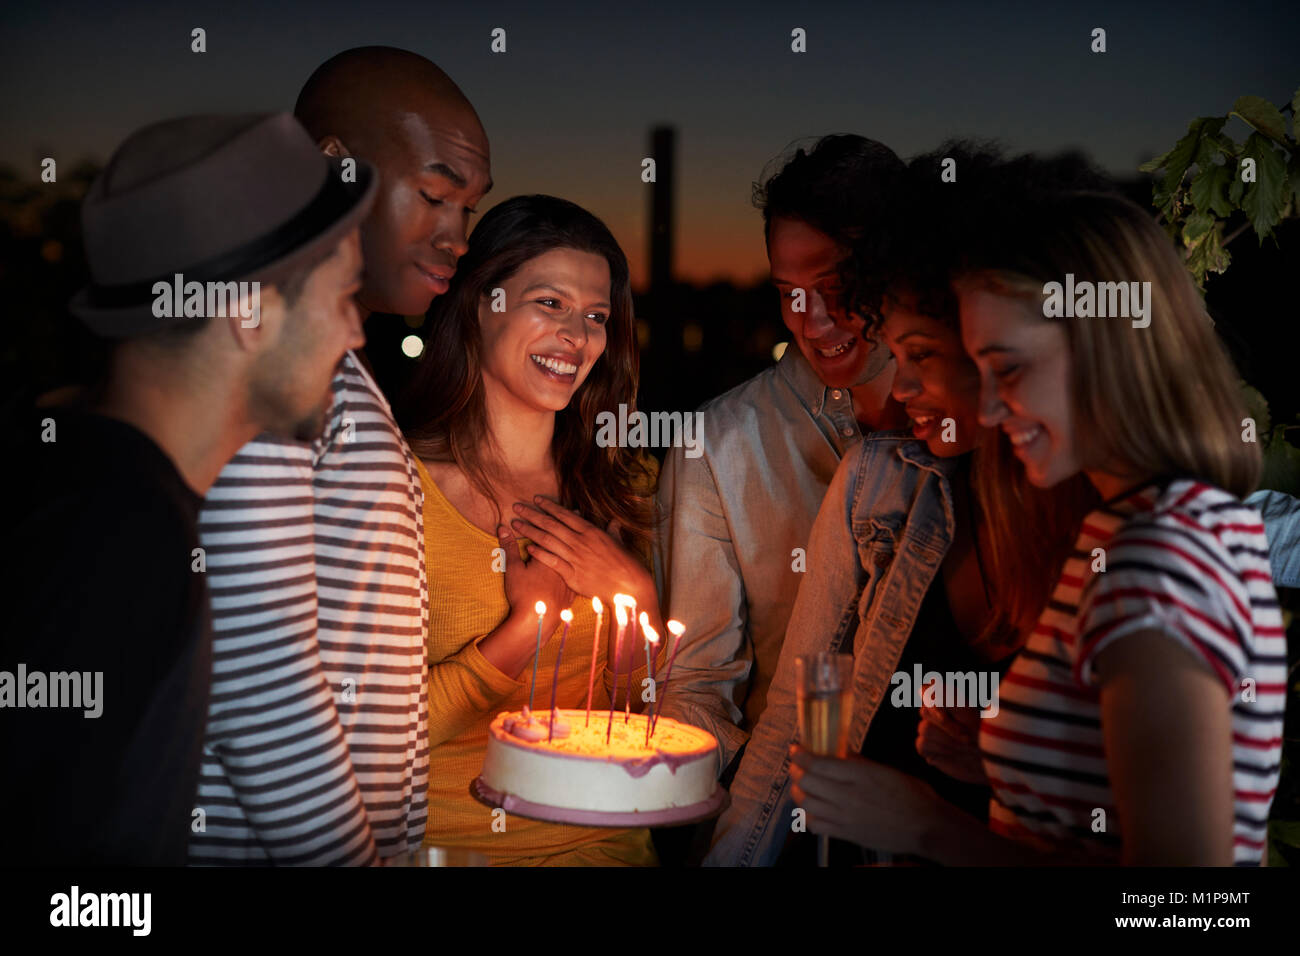 Junge Erwachsene feiern mit einem Geburtstagskuchen auf dem Dach Stockfoto